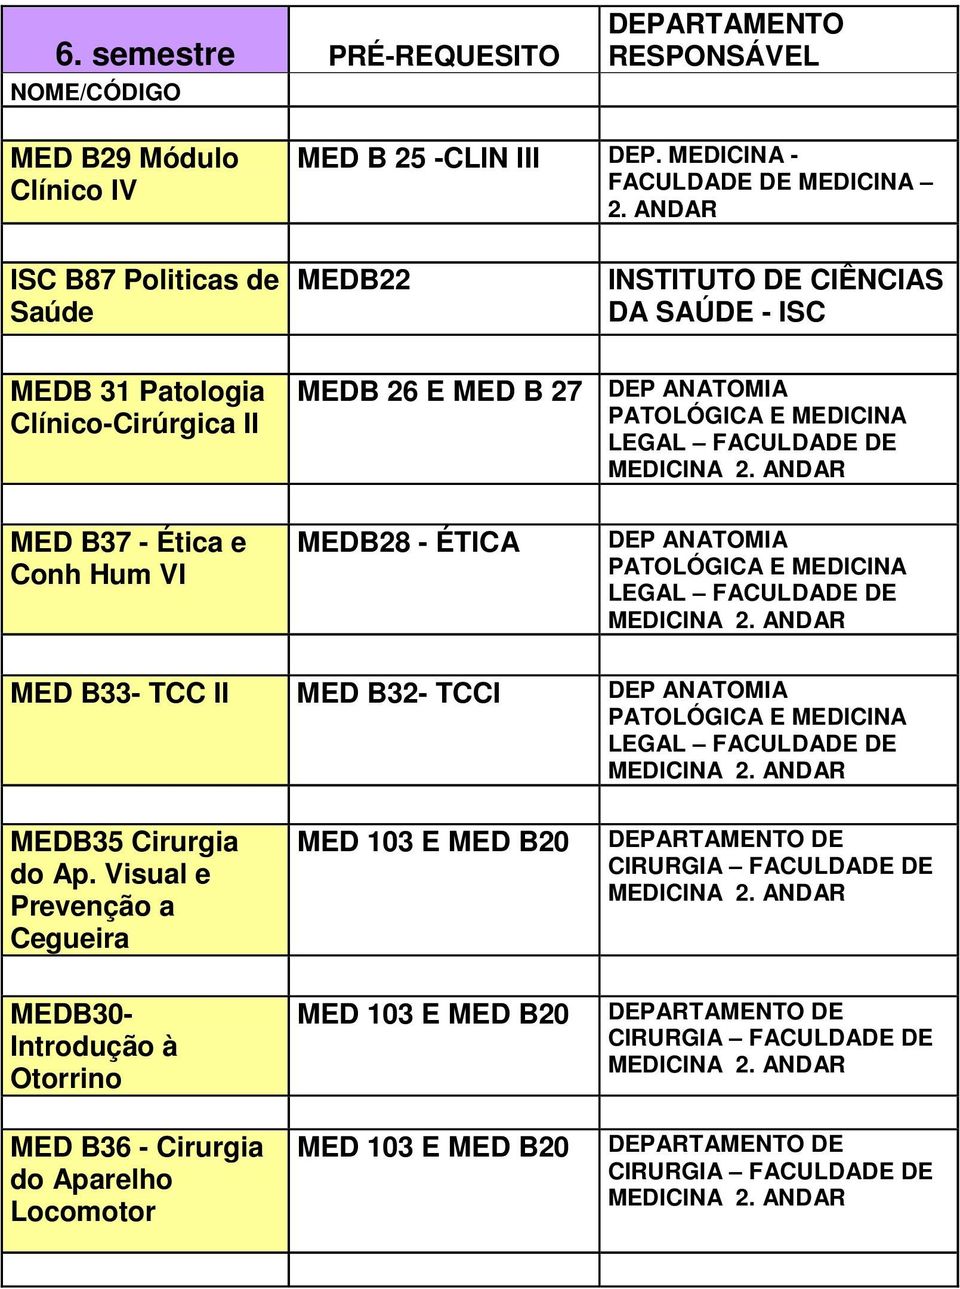 B37 - Ética e Conh Hum VI MEDB28 - ÉTICA LEGAL MED B33- TCC II MED B32- TCCI LEGAL MEDB35 Cirurgia do Ap.